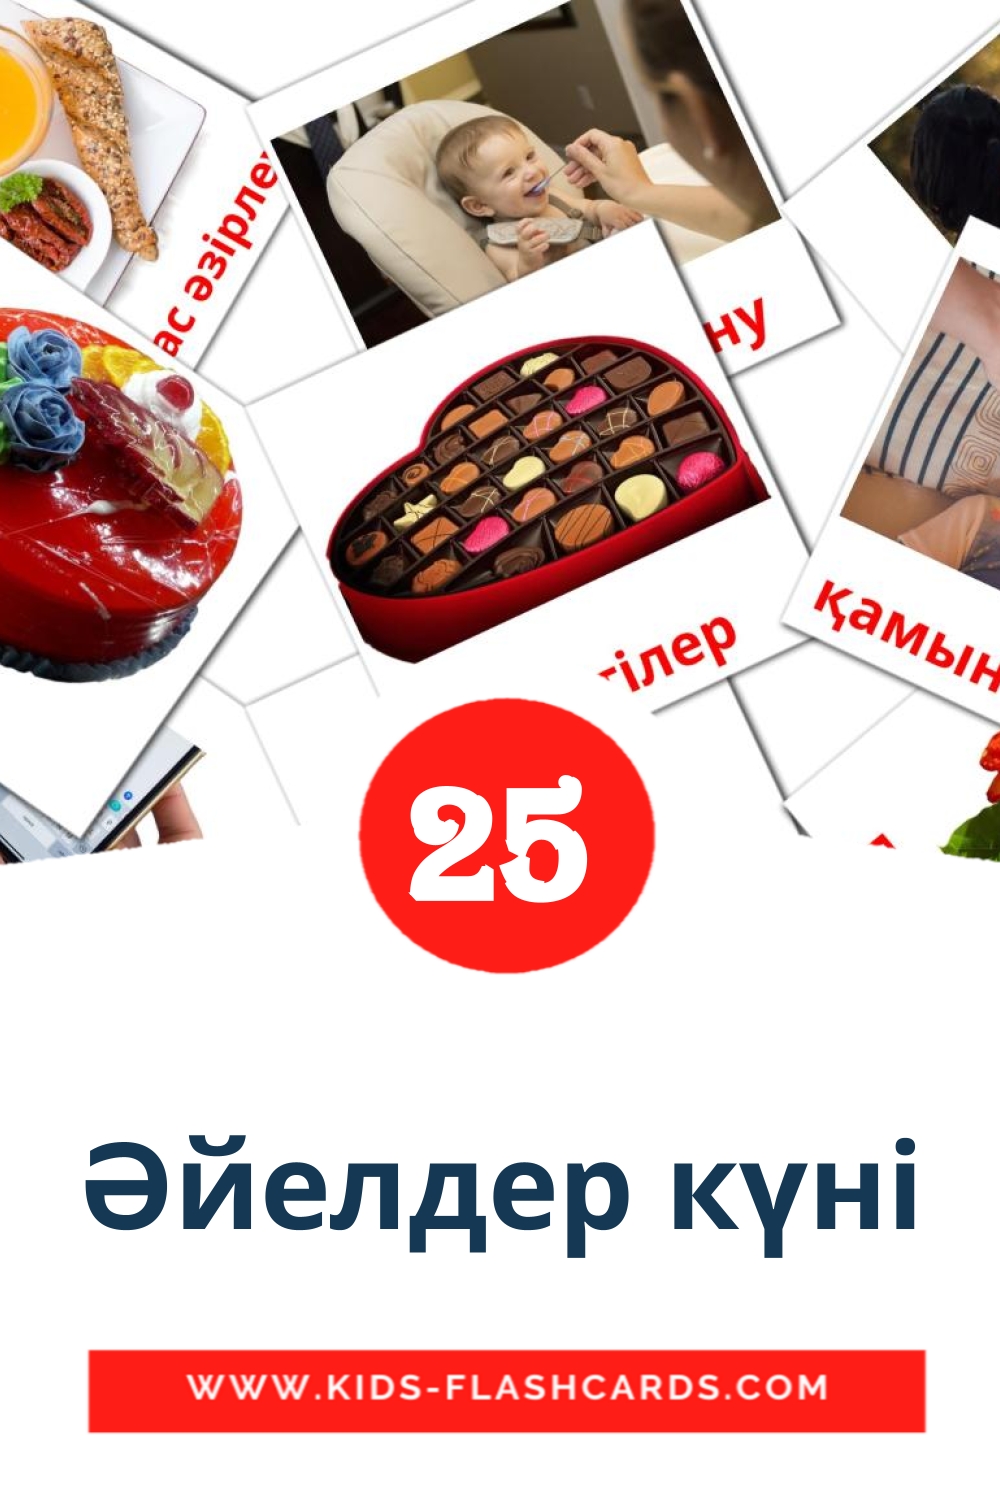 25 Cartões com Imagens de Әйелдер күні para Jardim de Infância em kazakh